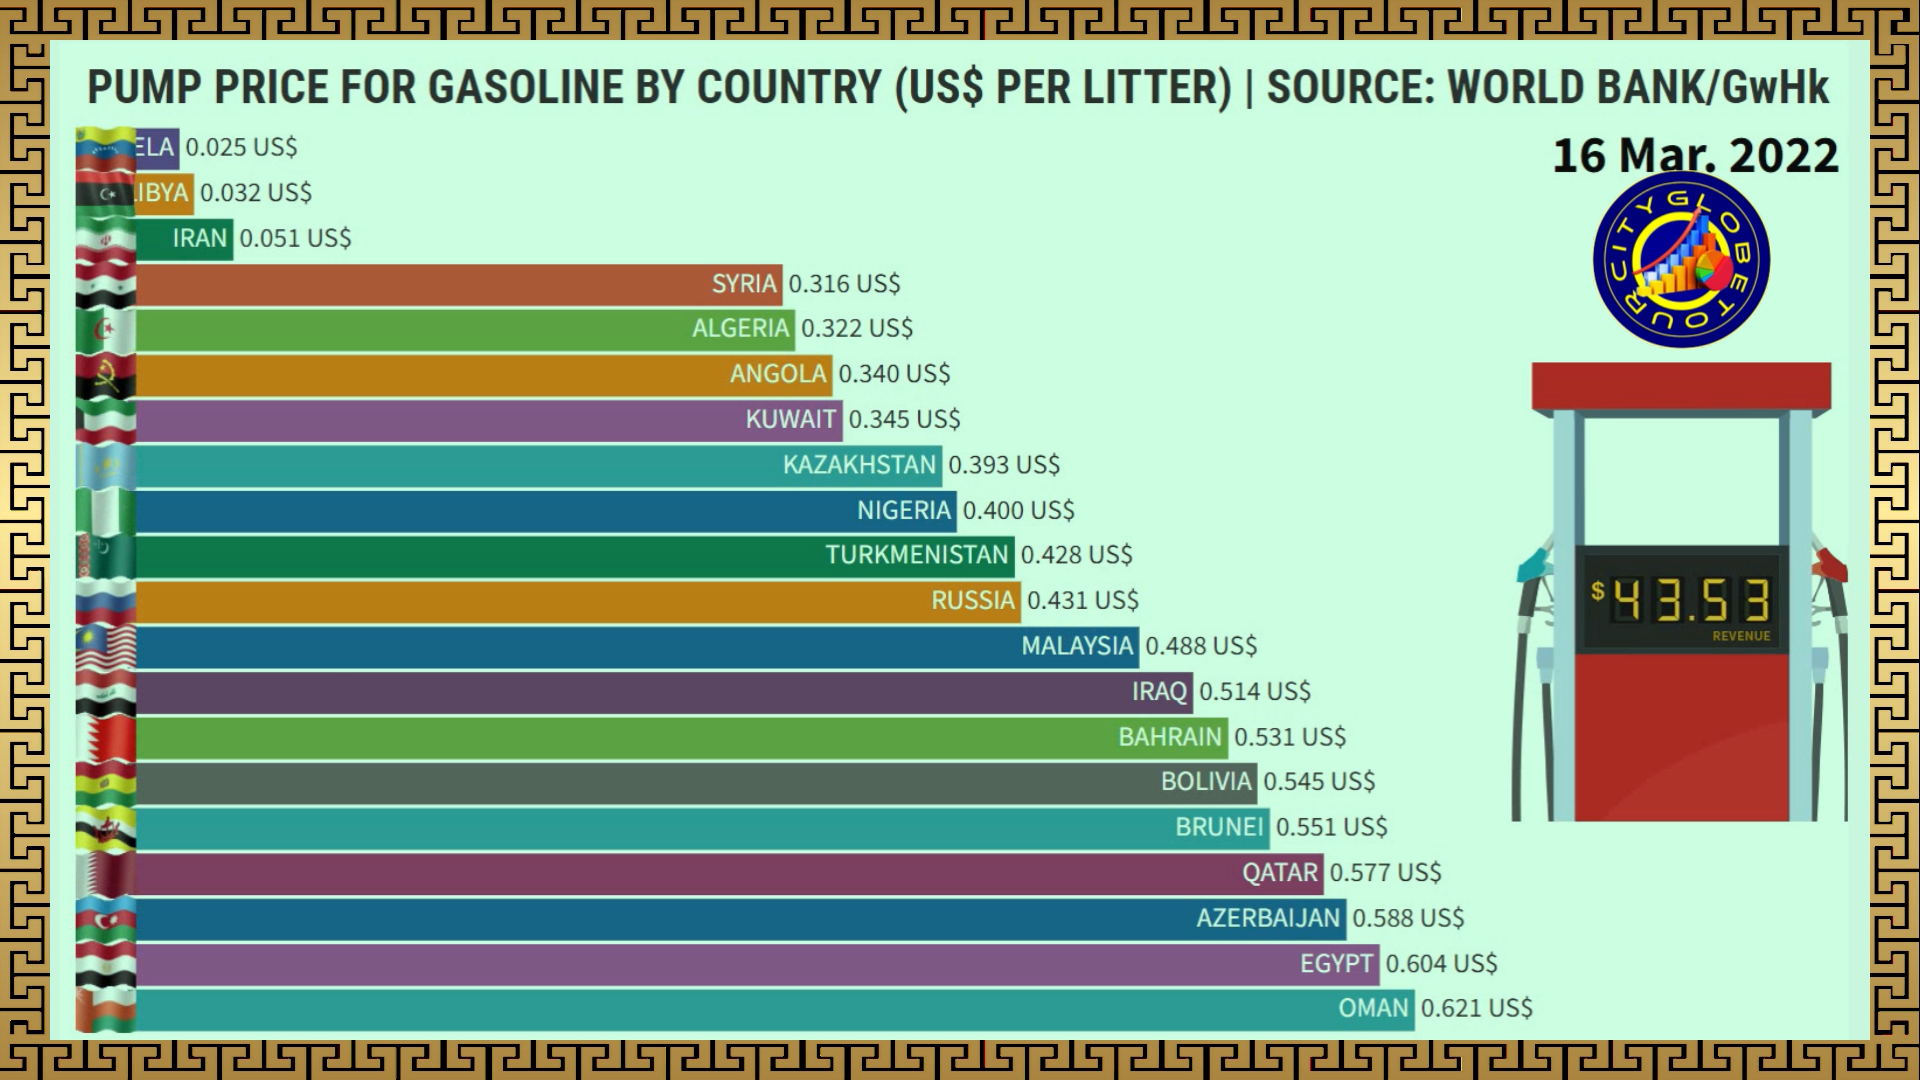 Gasolina Mais Barata do Mundo (Preço Por Litro US$)